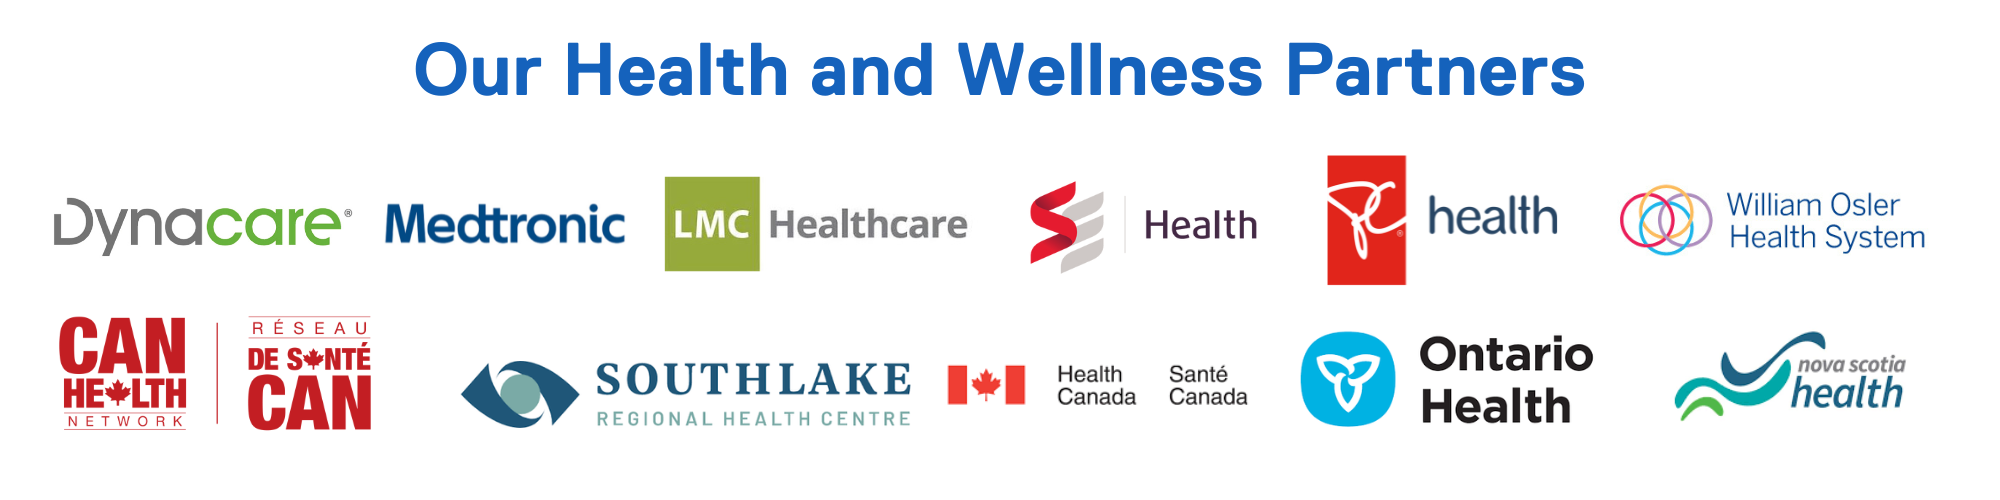 Brampton venture zone health and wellness partners 